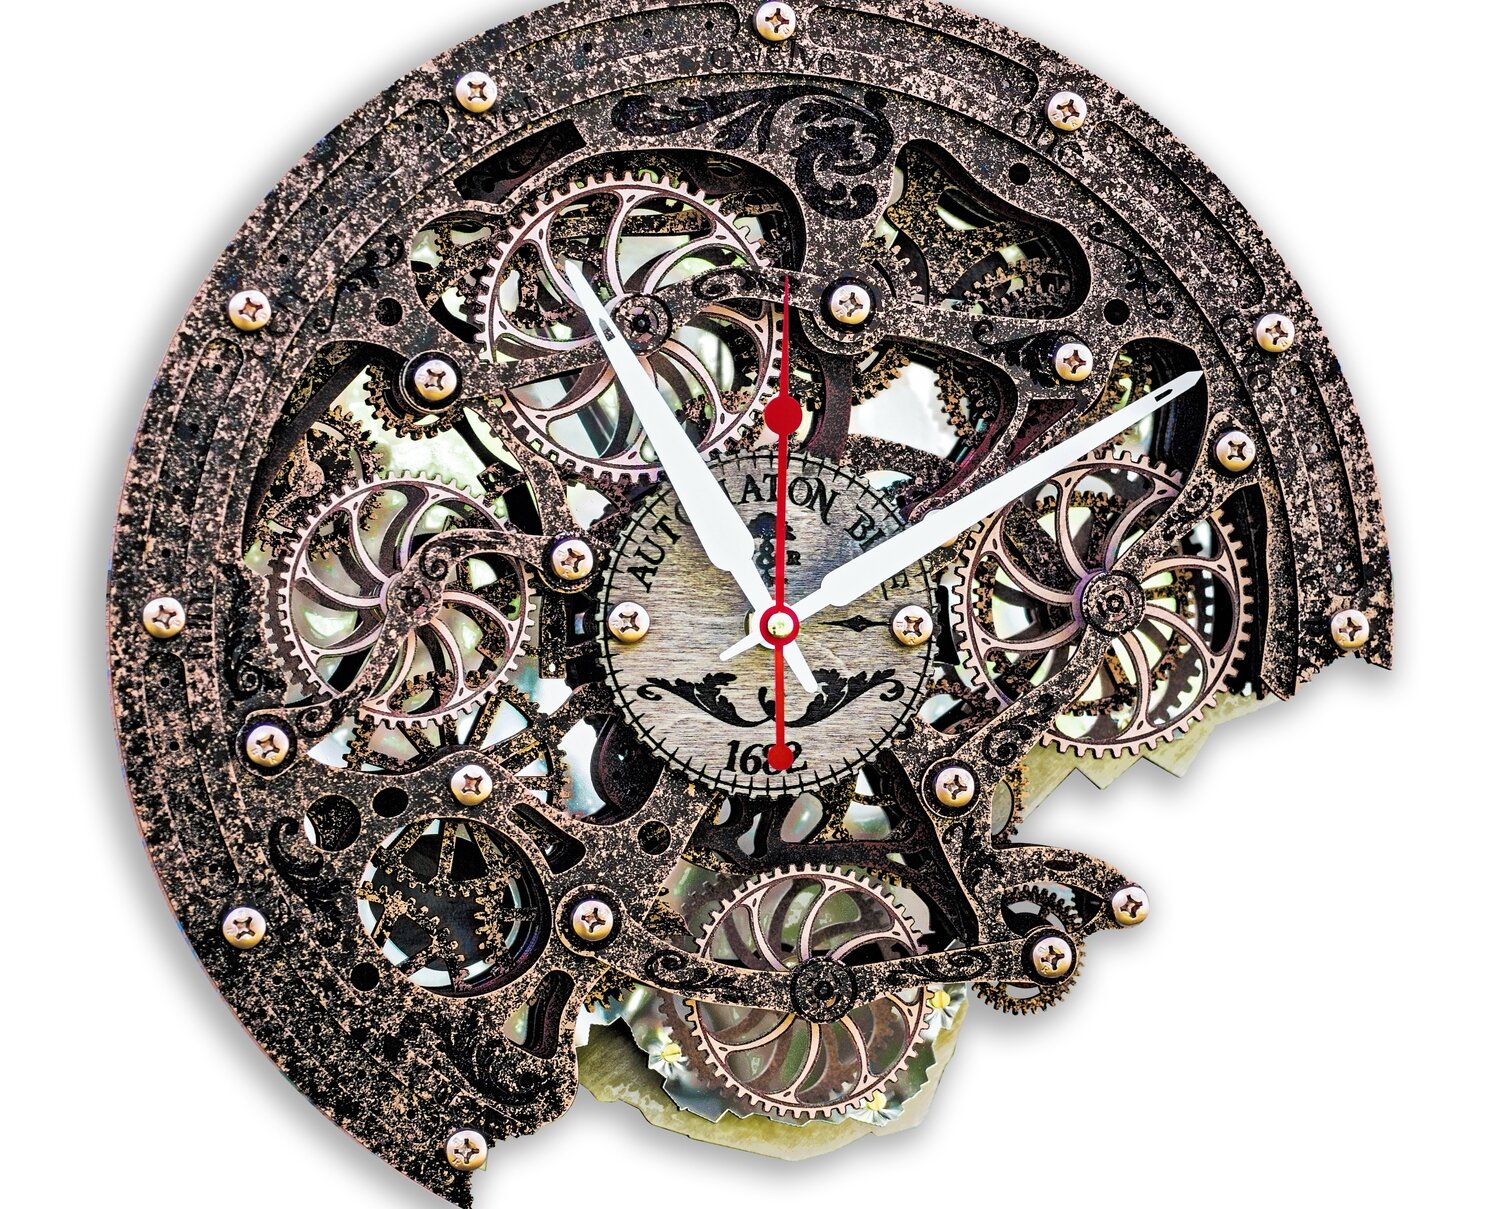 Automaton Bite 1682 Antique Copper Wall Clock